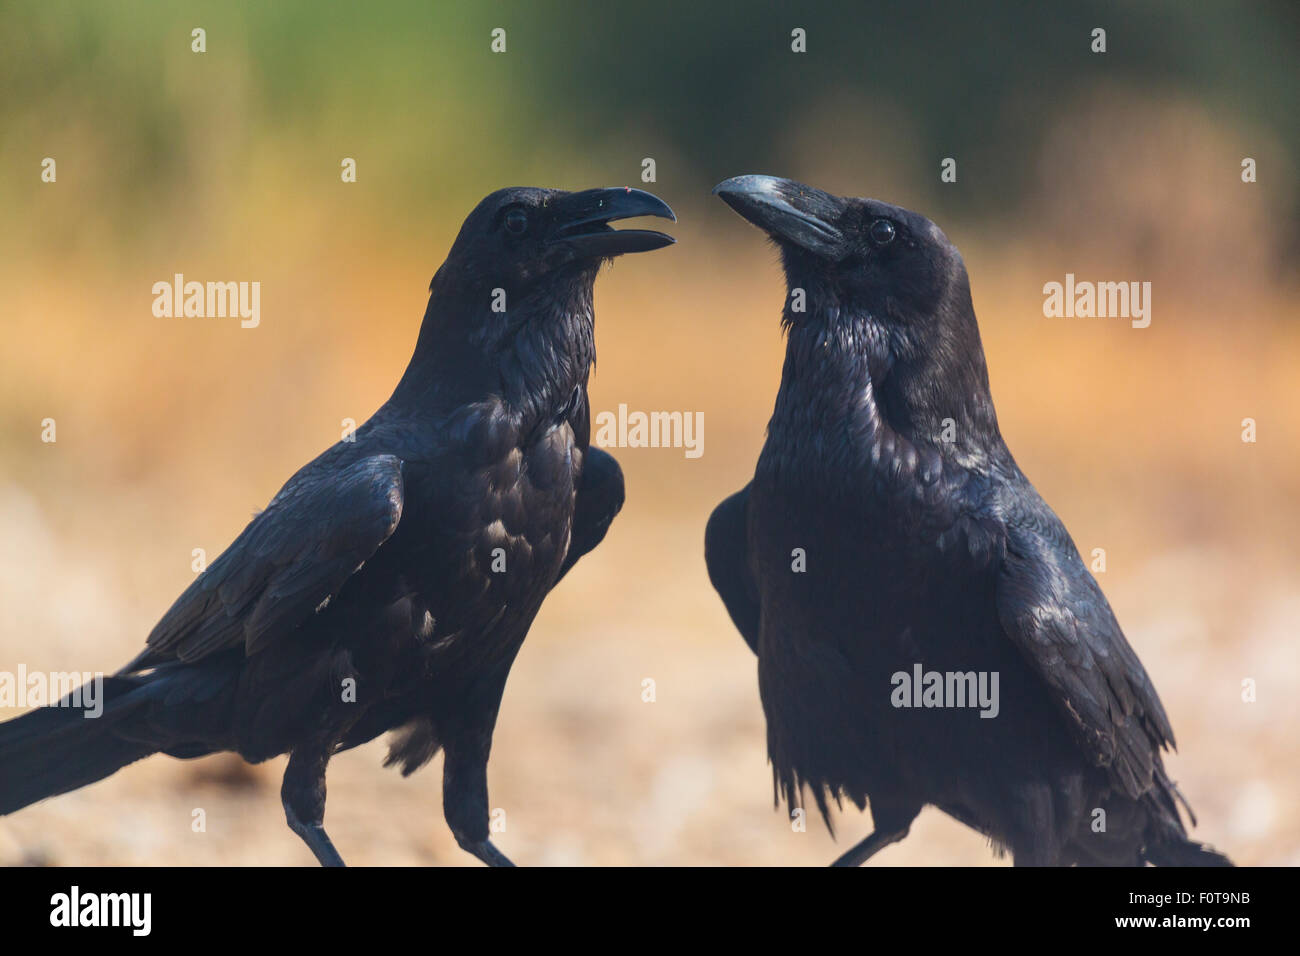 Cuervos comunes (Corvus corax) dos interactuando, campanarios de Azaba Reserva Biológica, una zona de Europa rewilding, Salamanca, Castilla y León, España Foto de stock